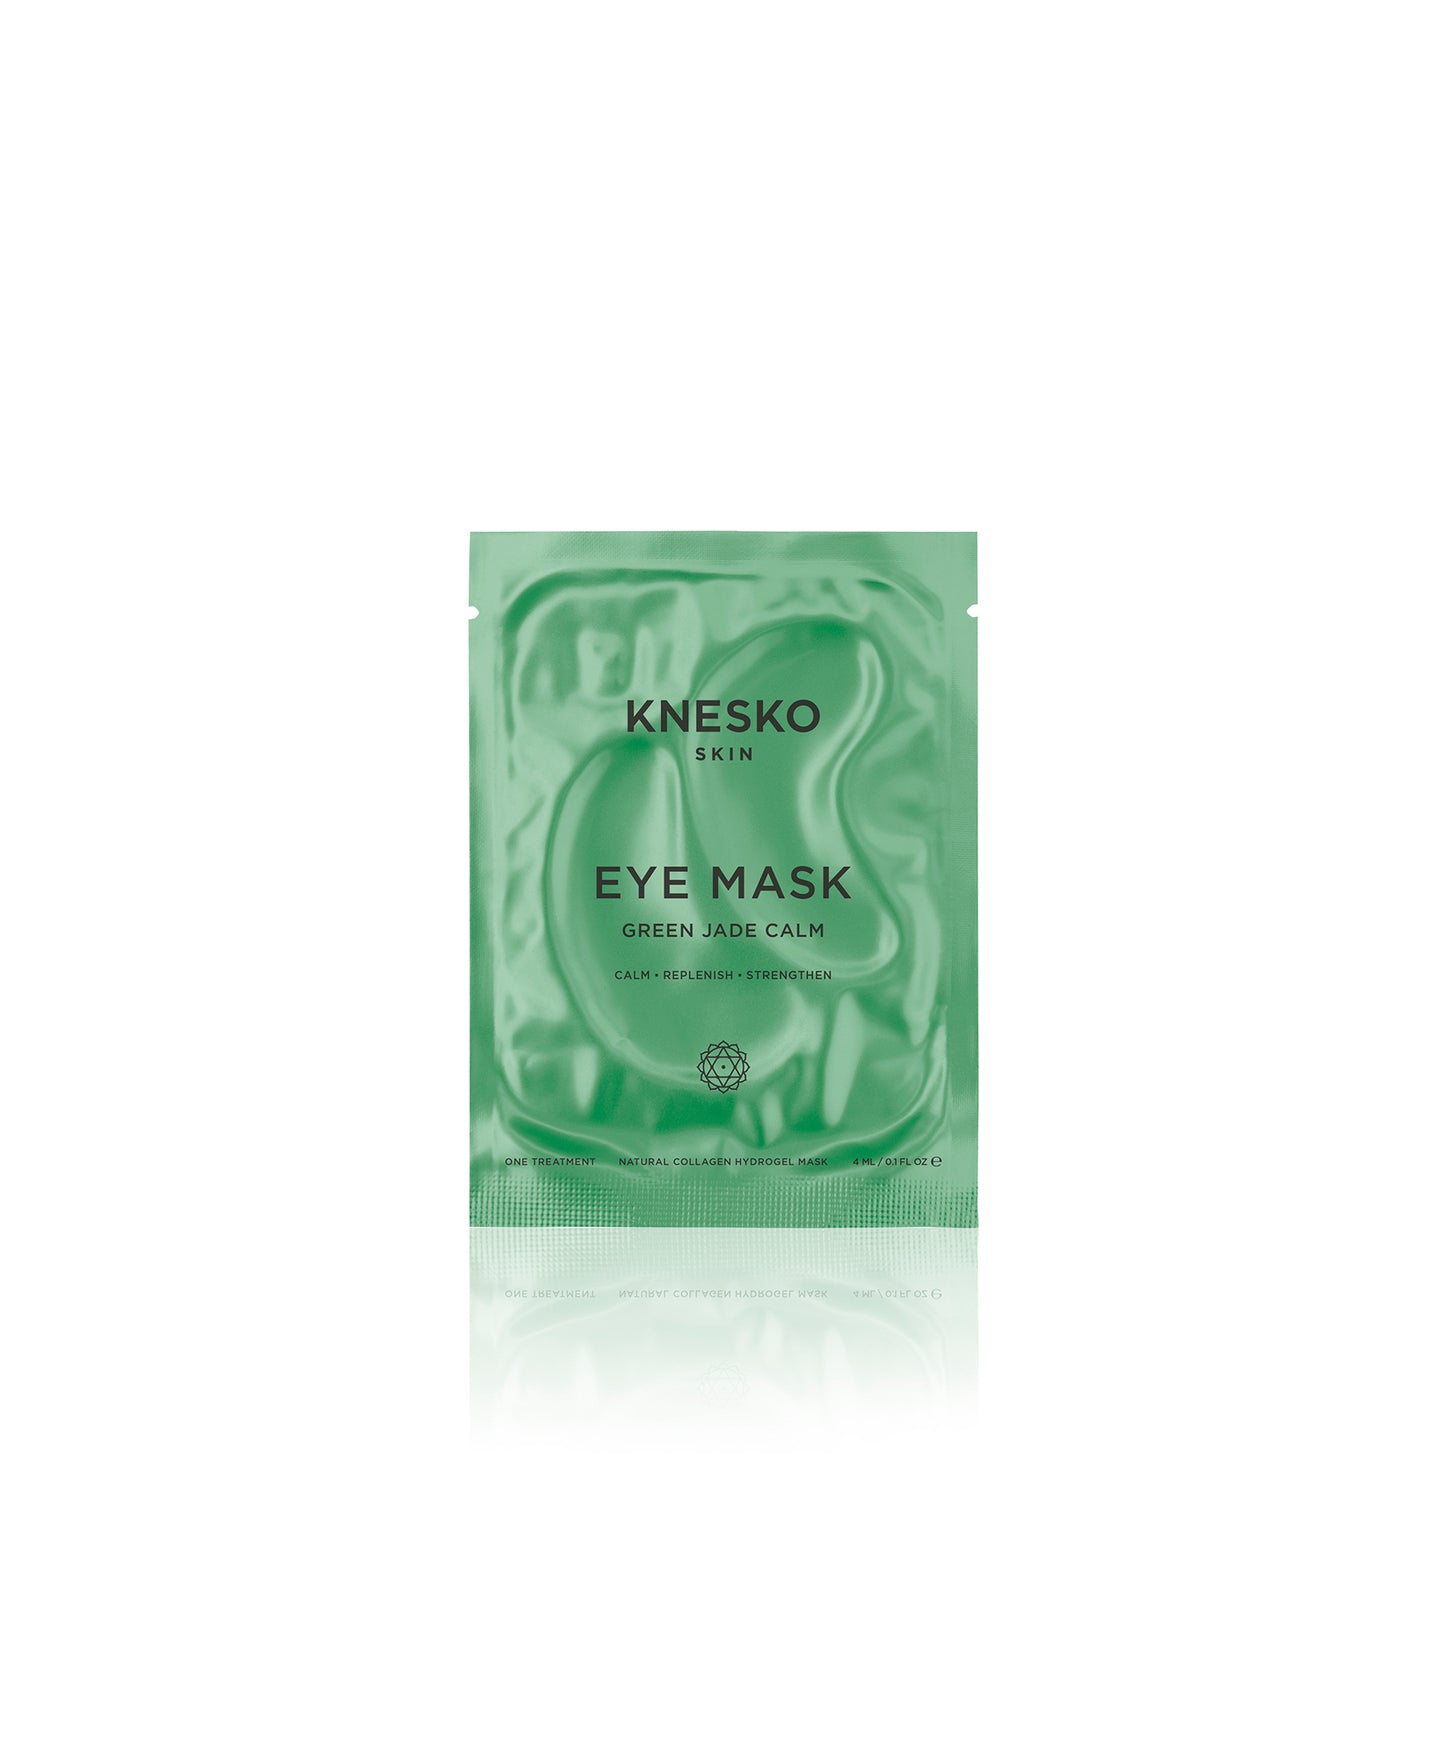 green jade eye mask packaging 